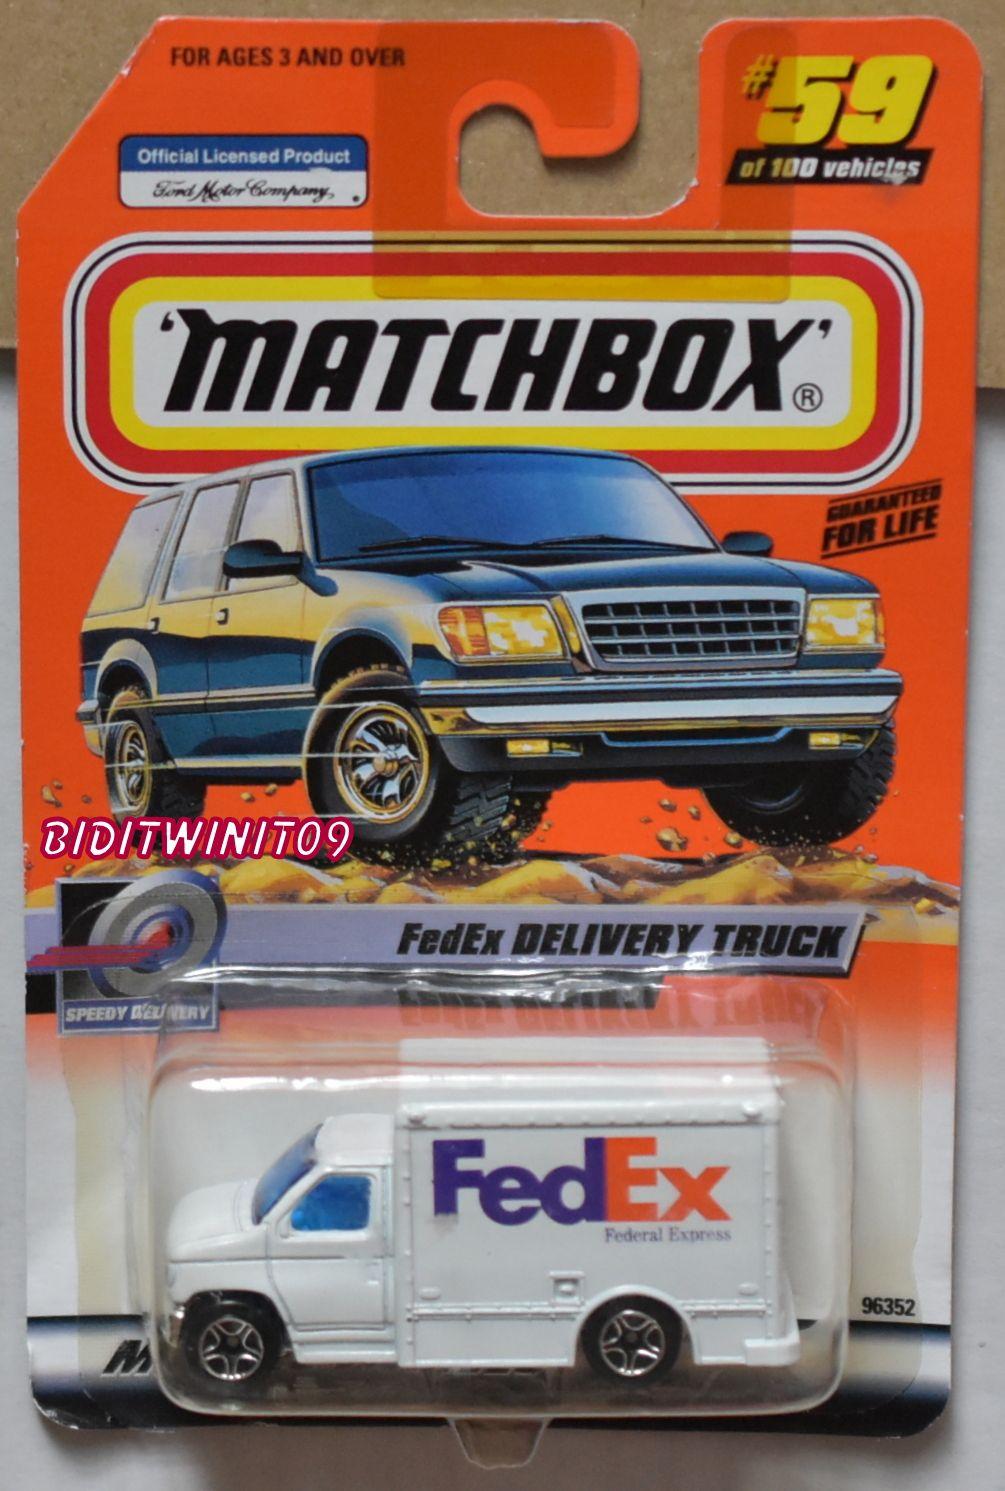 Matchbox Logo - MATCHBOX 2000 TREASURE HUNT W/ MATCHBOX LOGO FEDEX DELIVERY TRUCK